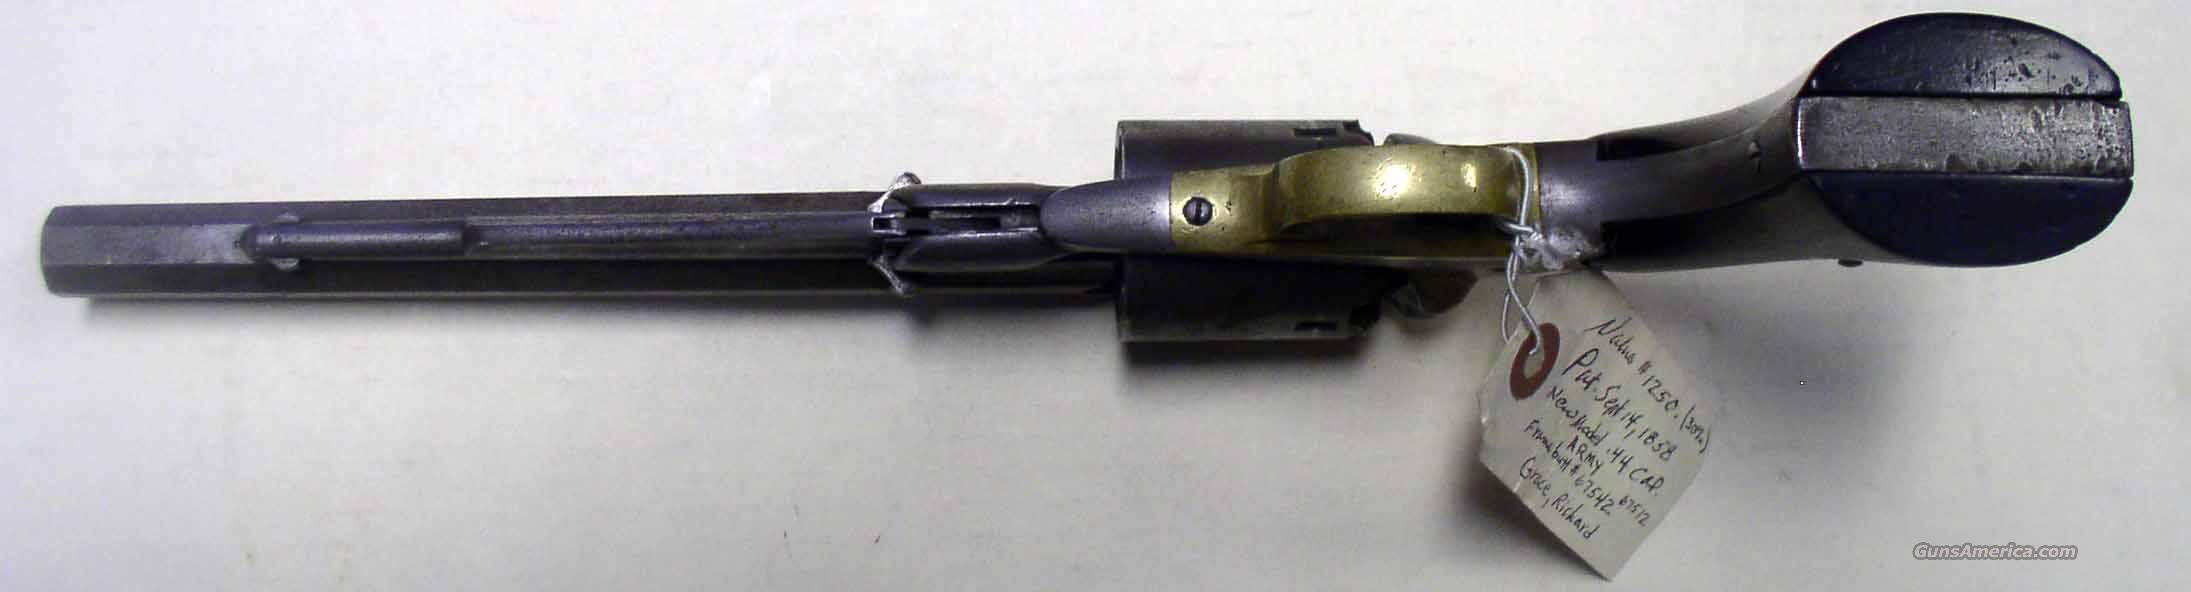 1858 remington serial number dates